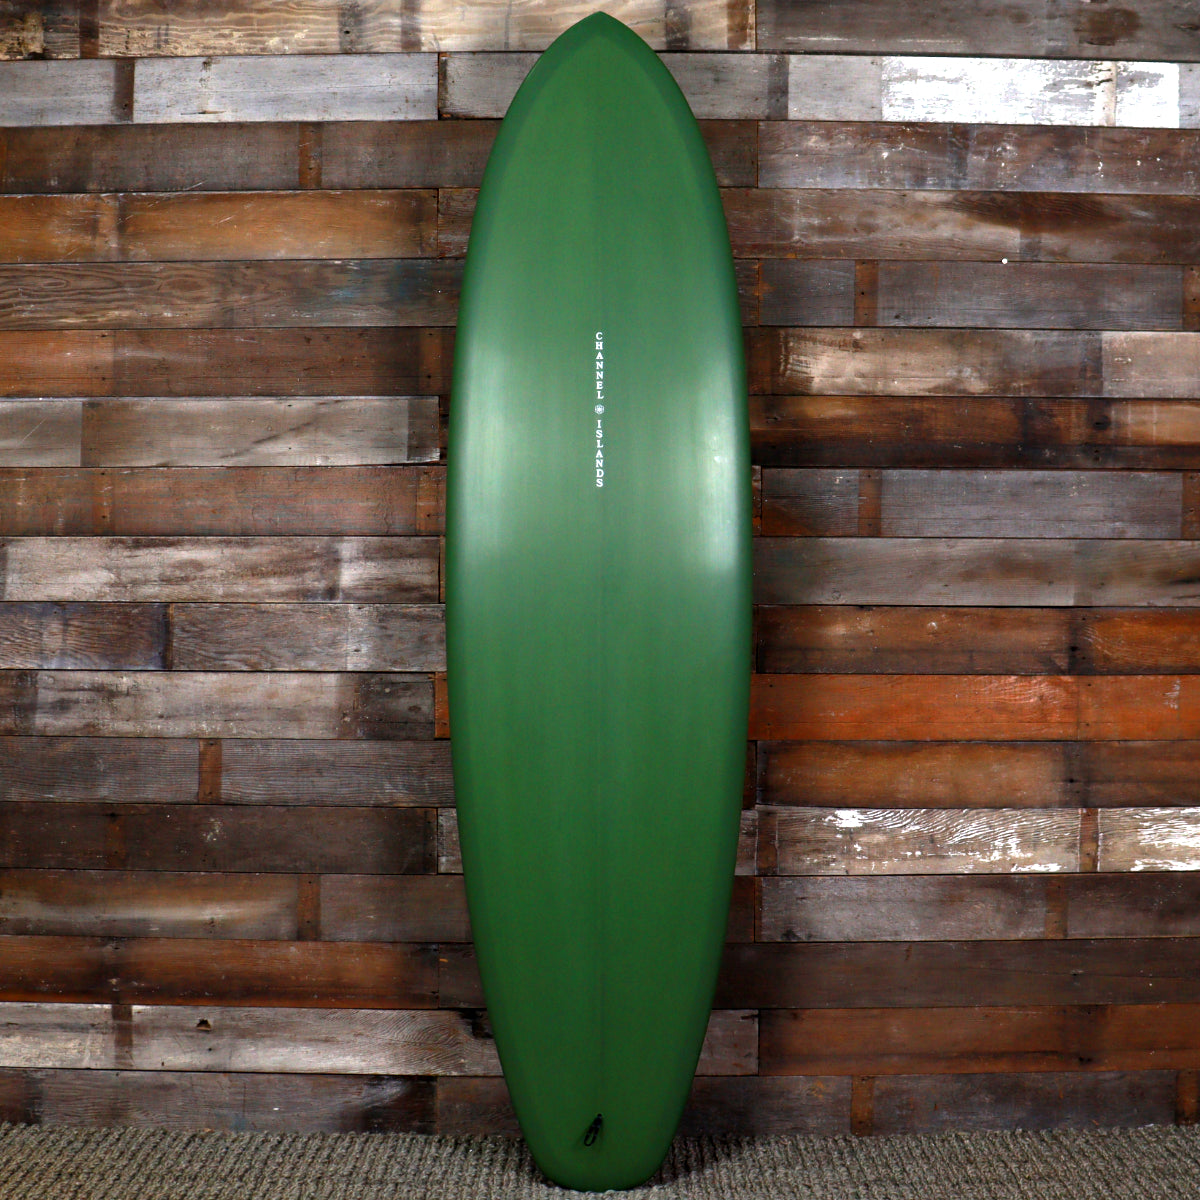 Channel Islands TPH 69 x 21 ⅛ x 2 11/16 Surfboard